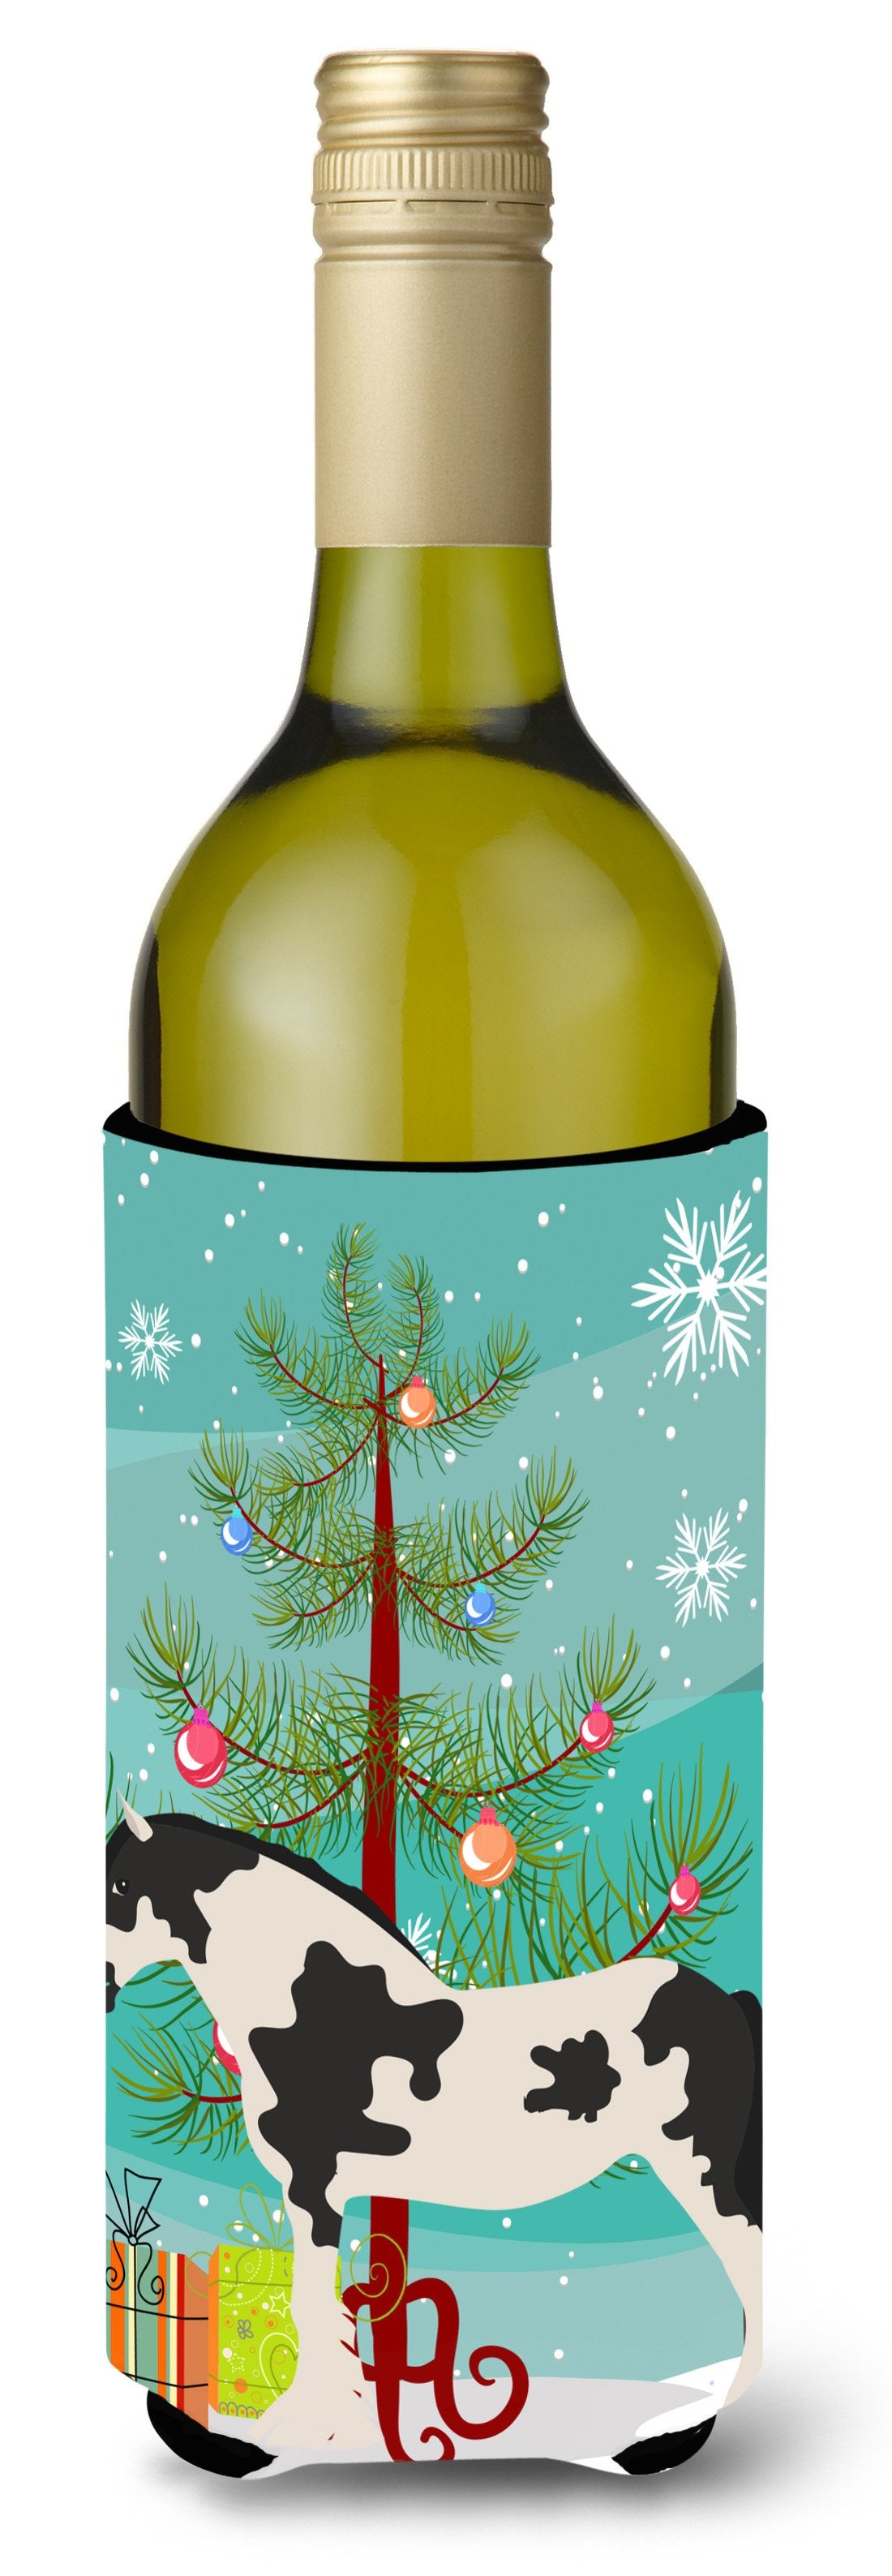 Cyldesdale Horse Christmas Wine Bottle Beverge Insulator Hugger BB9279LITERK by Caroline's Treasures